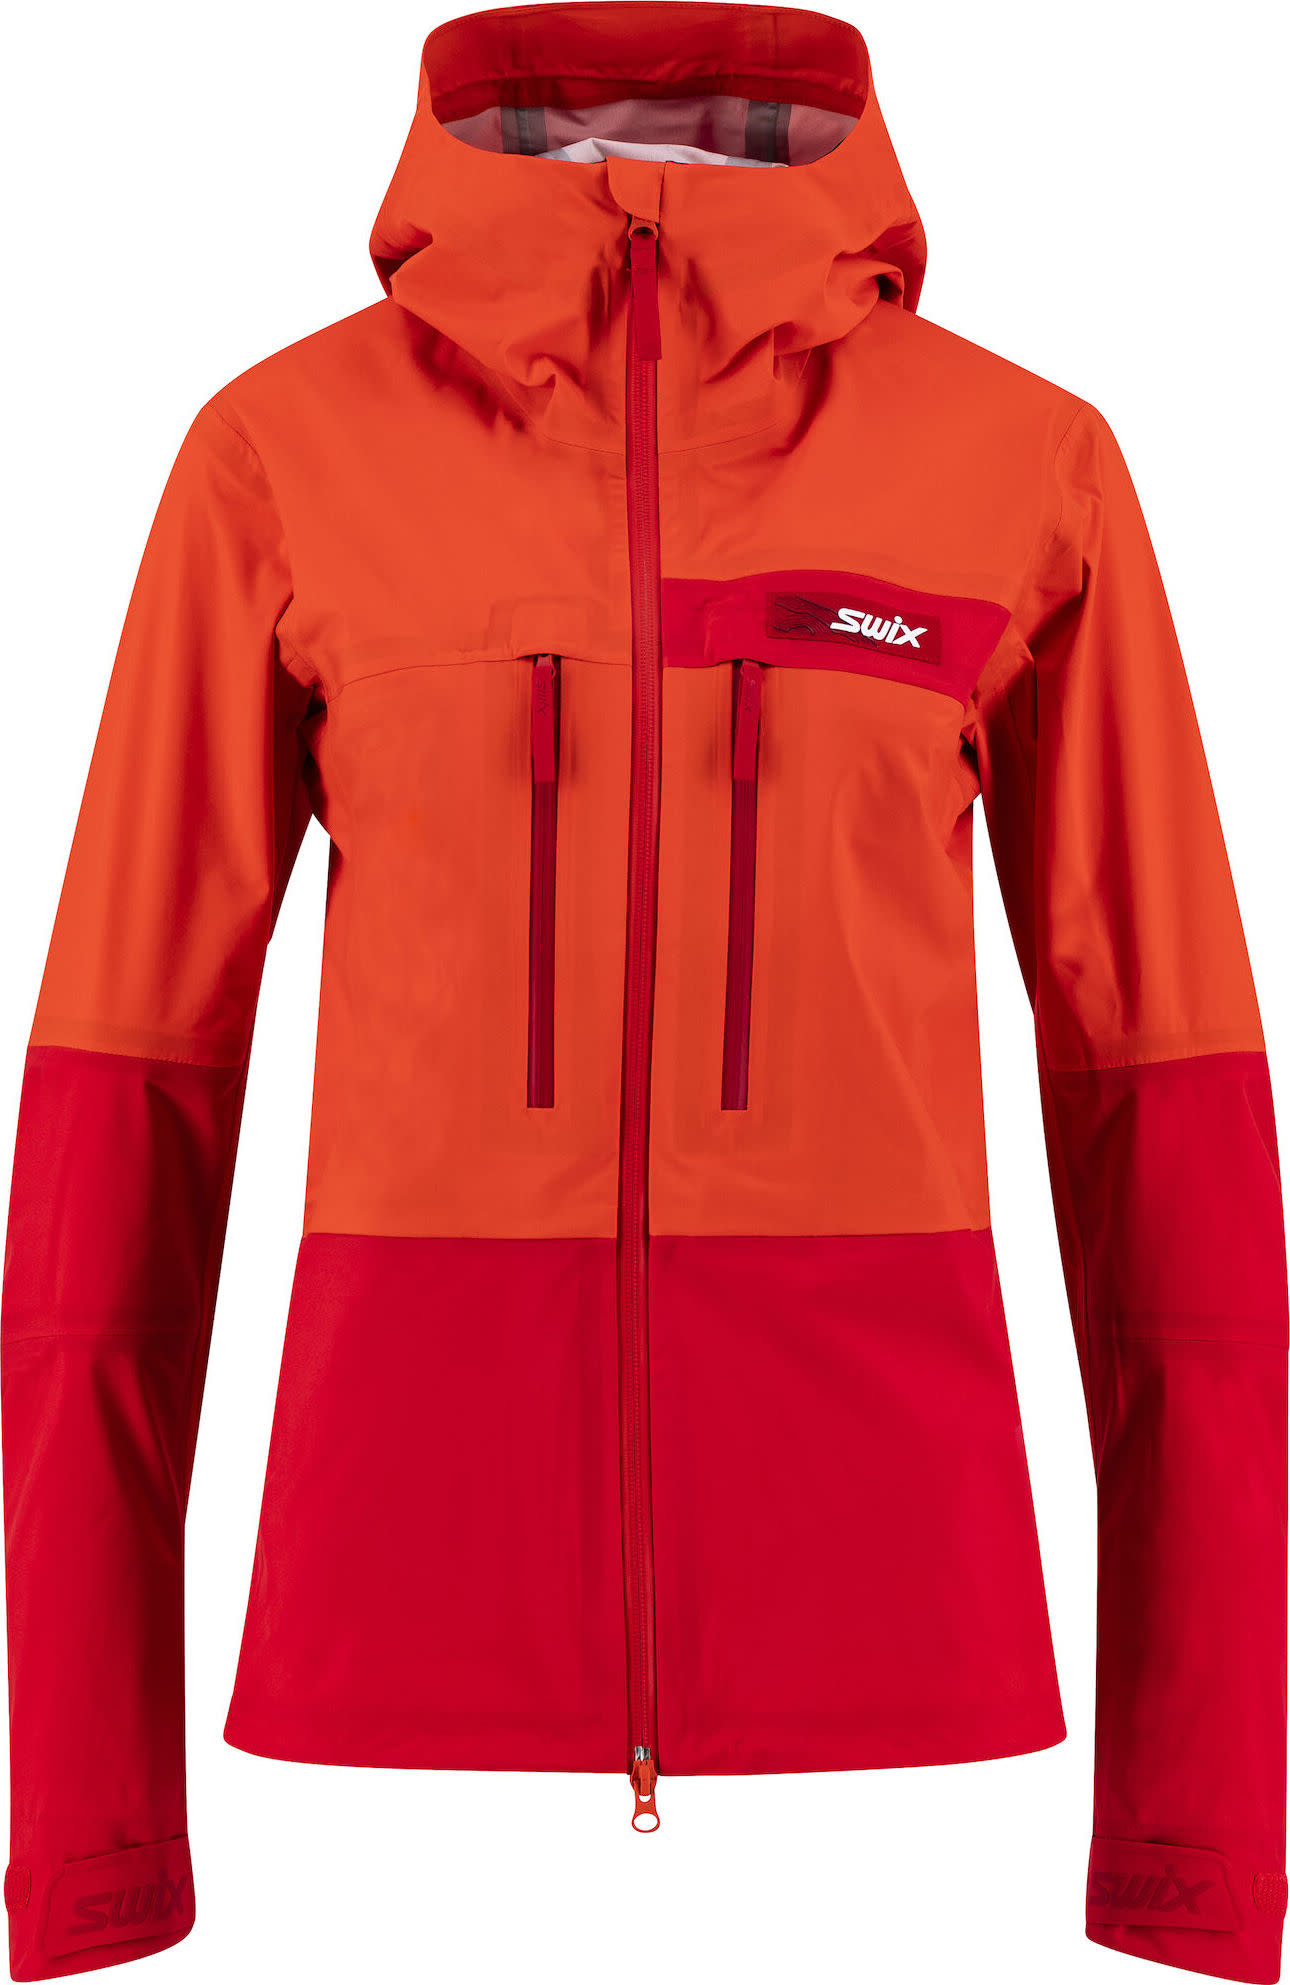 Women's Surmount Shell Jacket Swix red